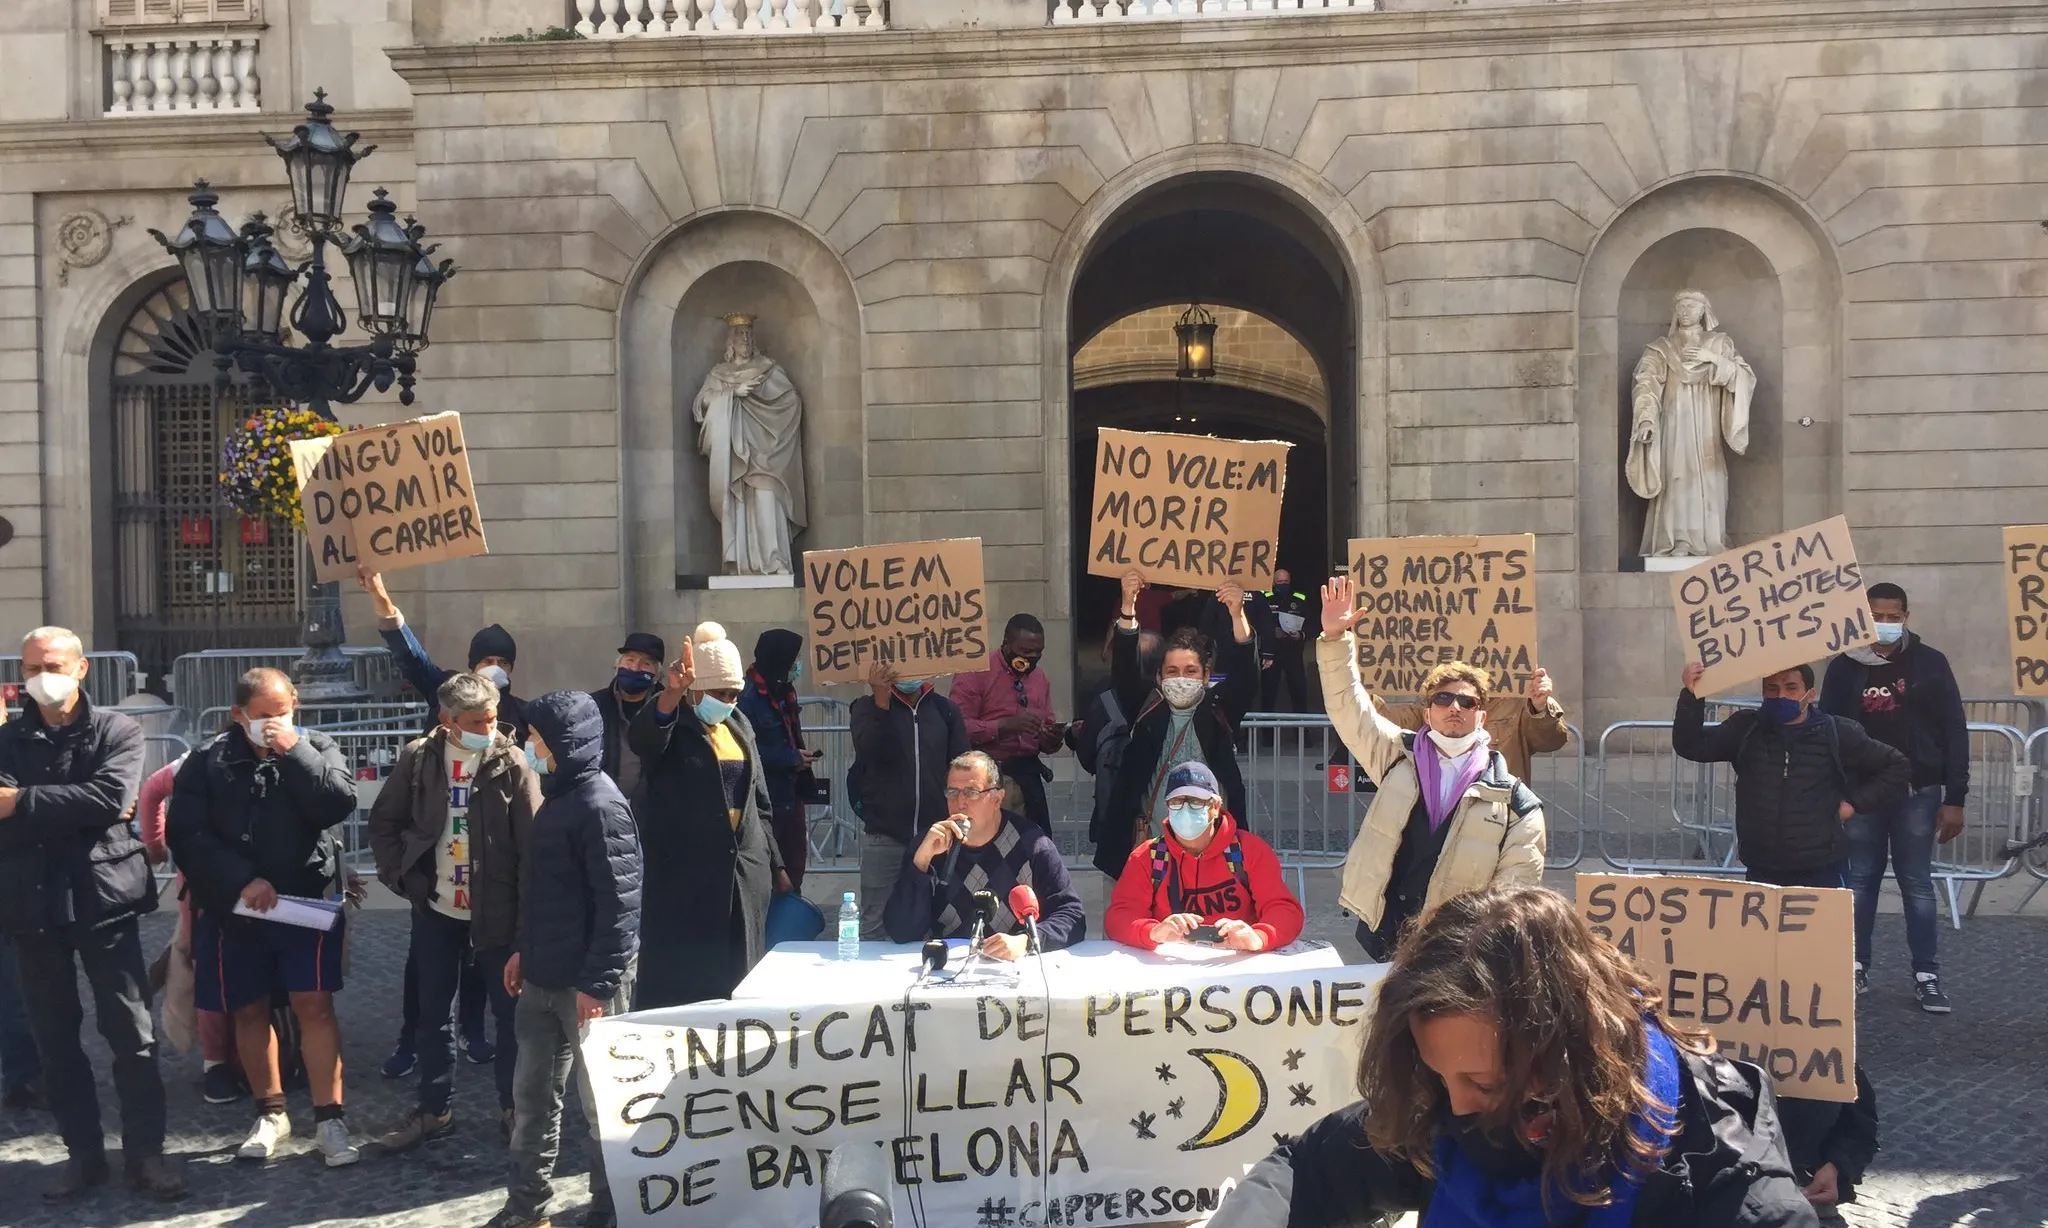 El primer Sindicat de Persones sense llar s'ha creat a Barcelona